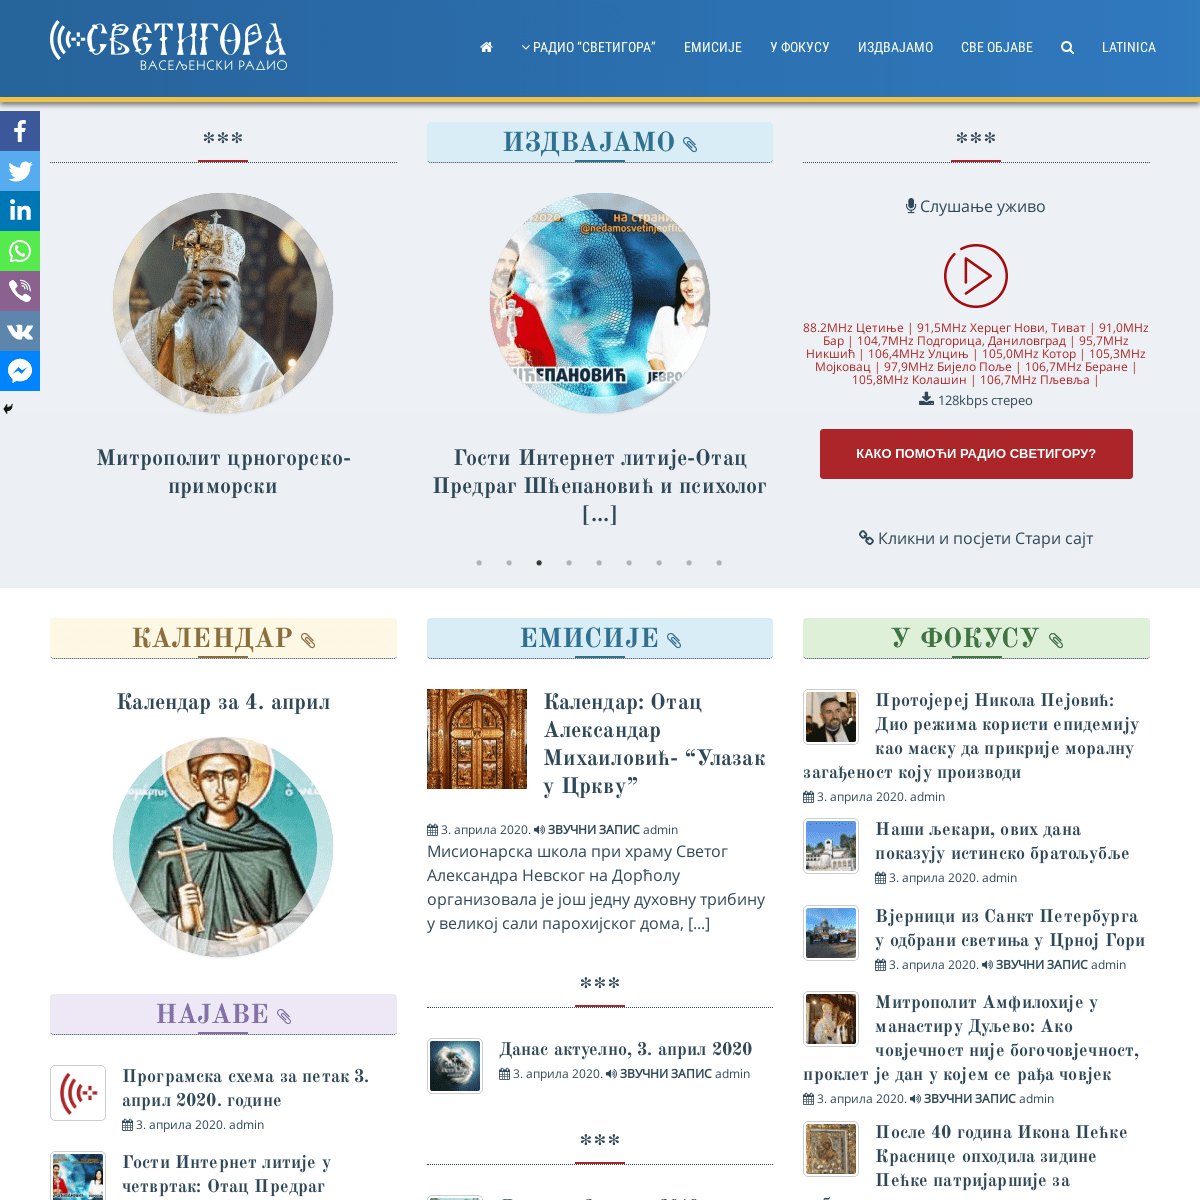 A complete backup of svetigora.com